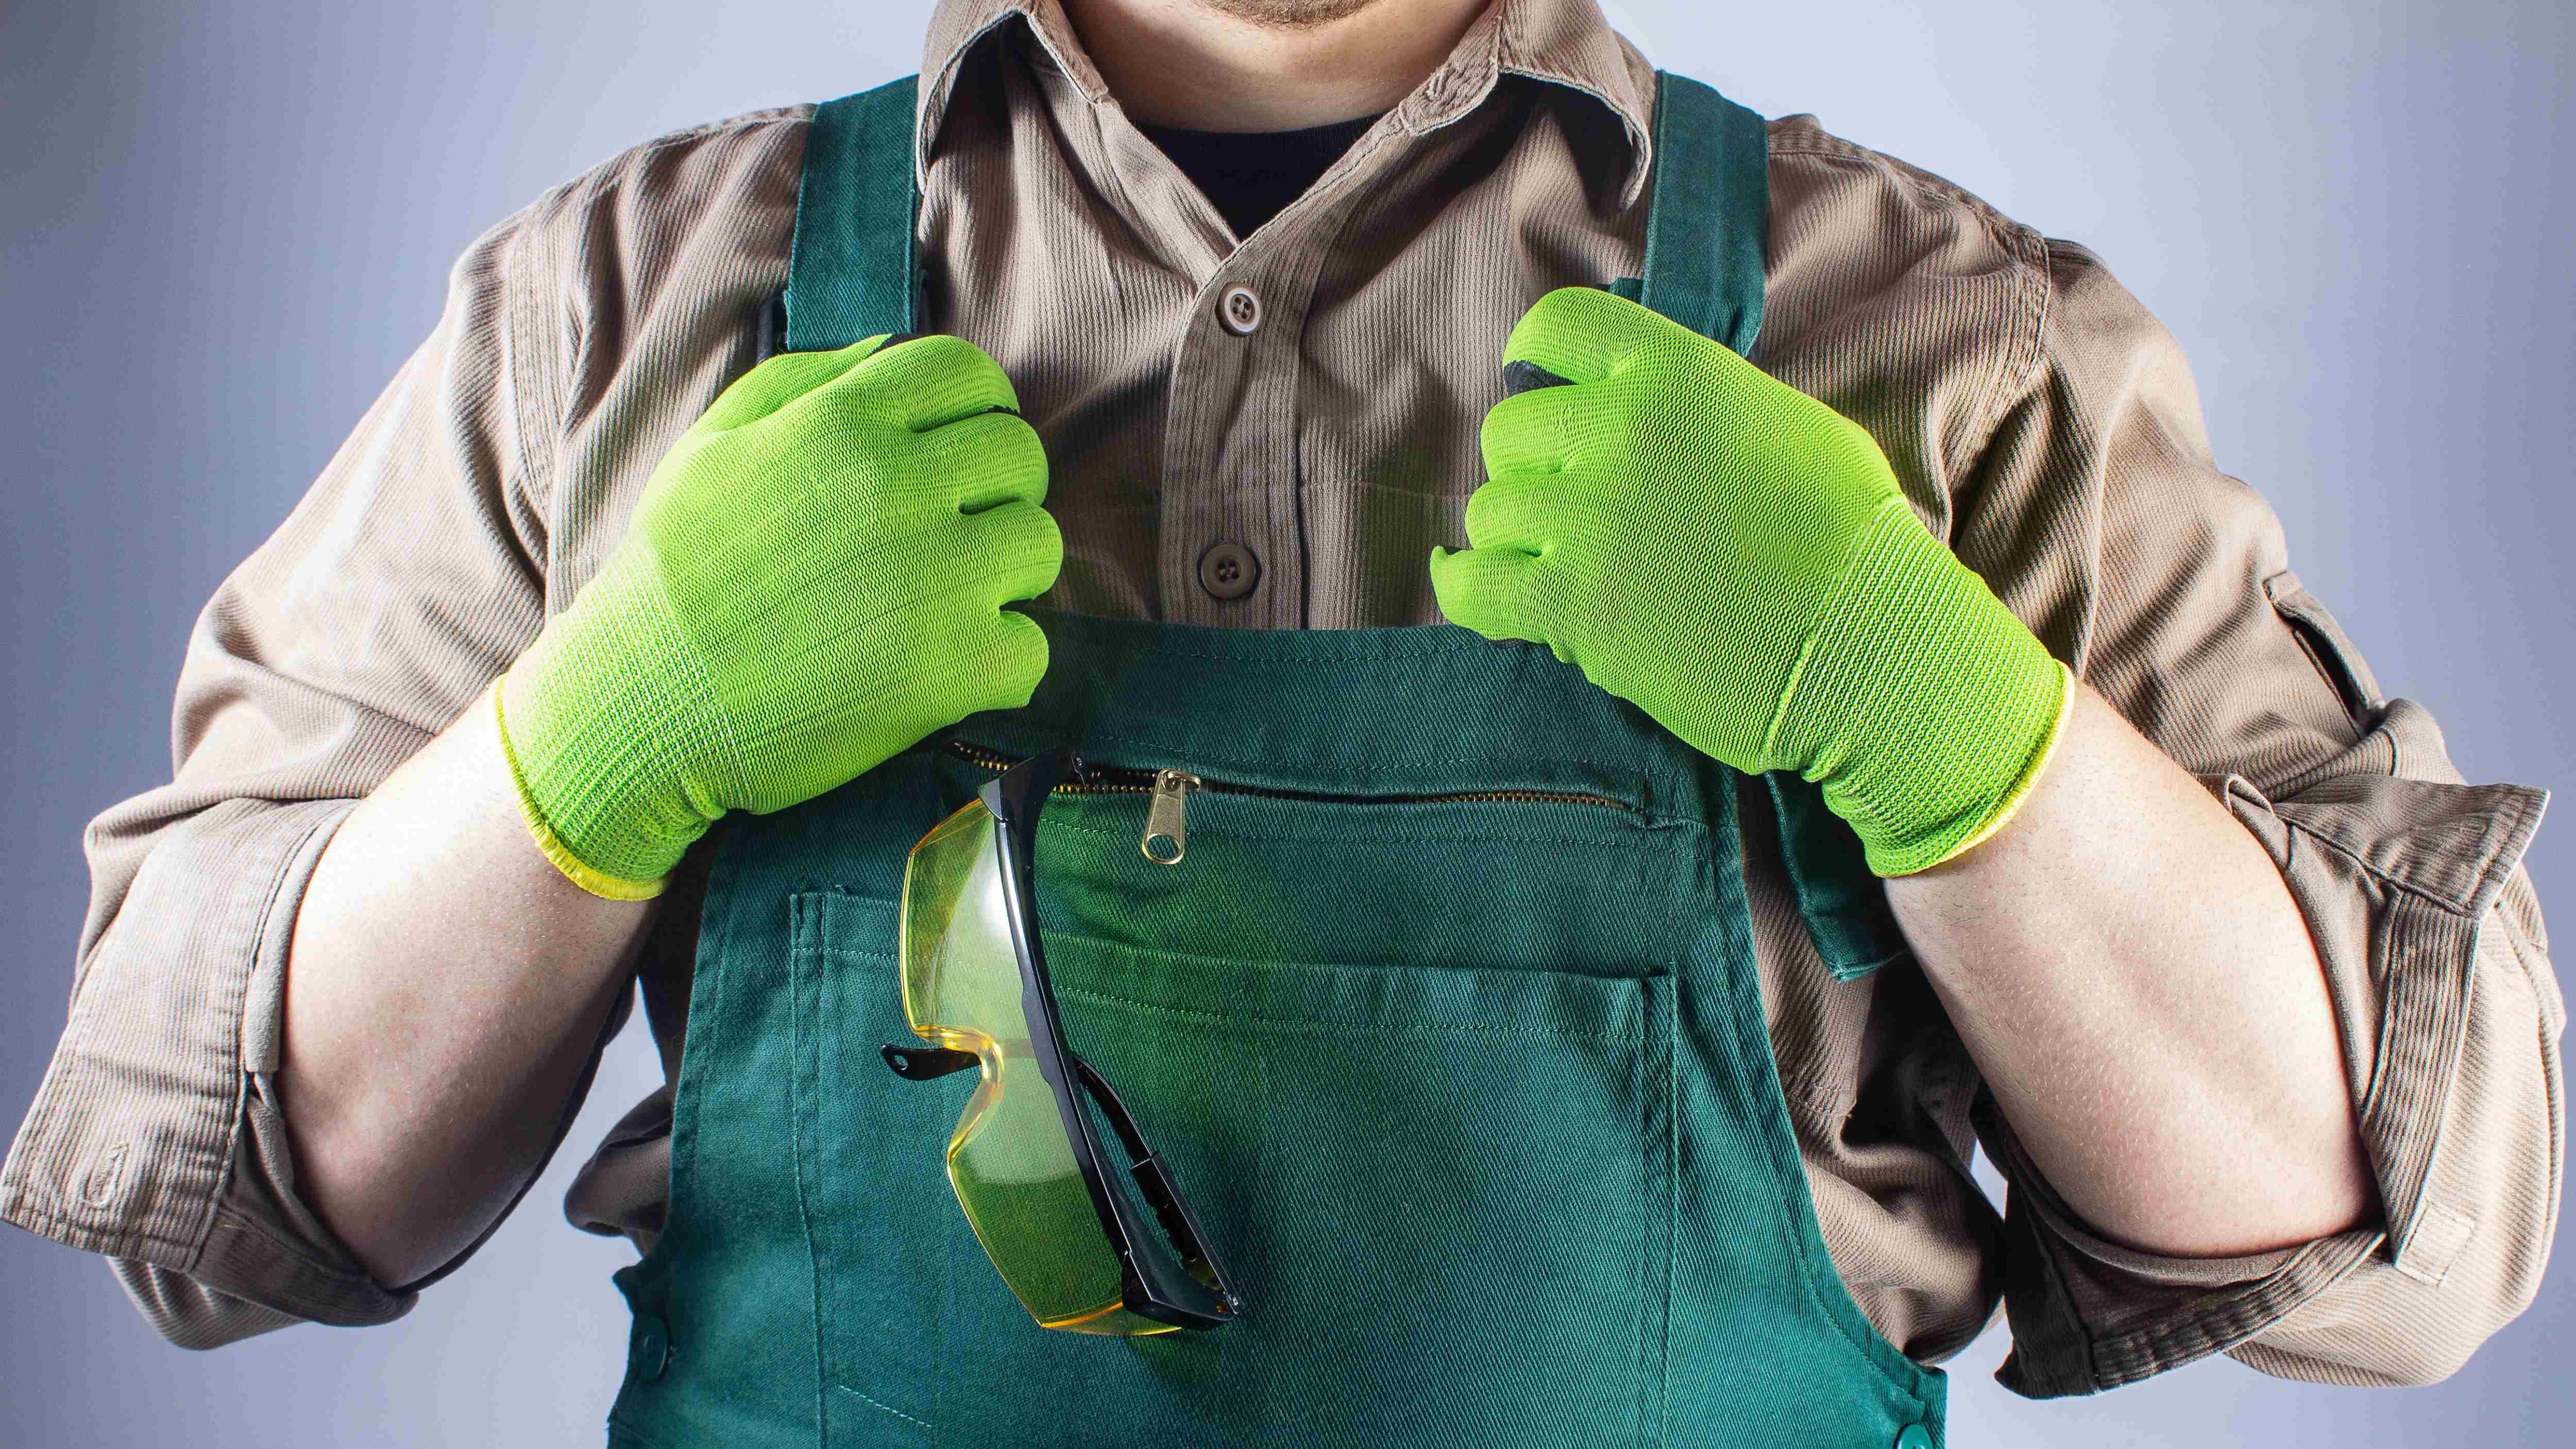 Choisir des gants de protection, Outils et équipements